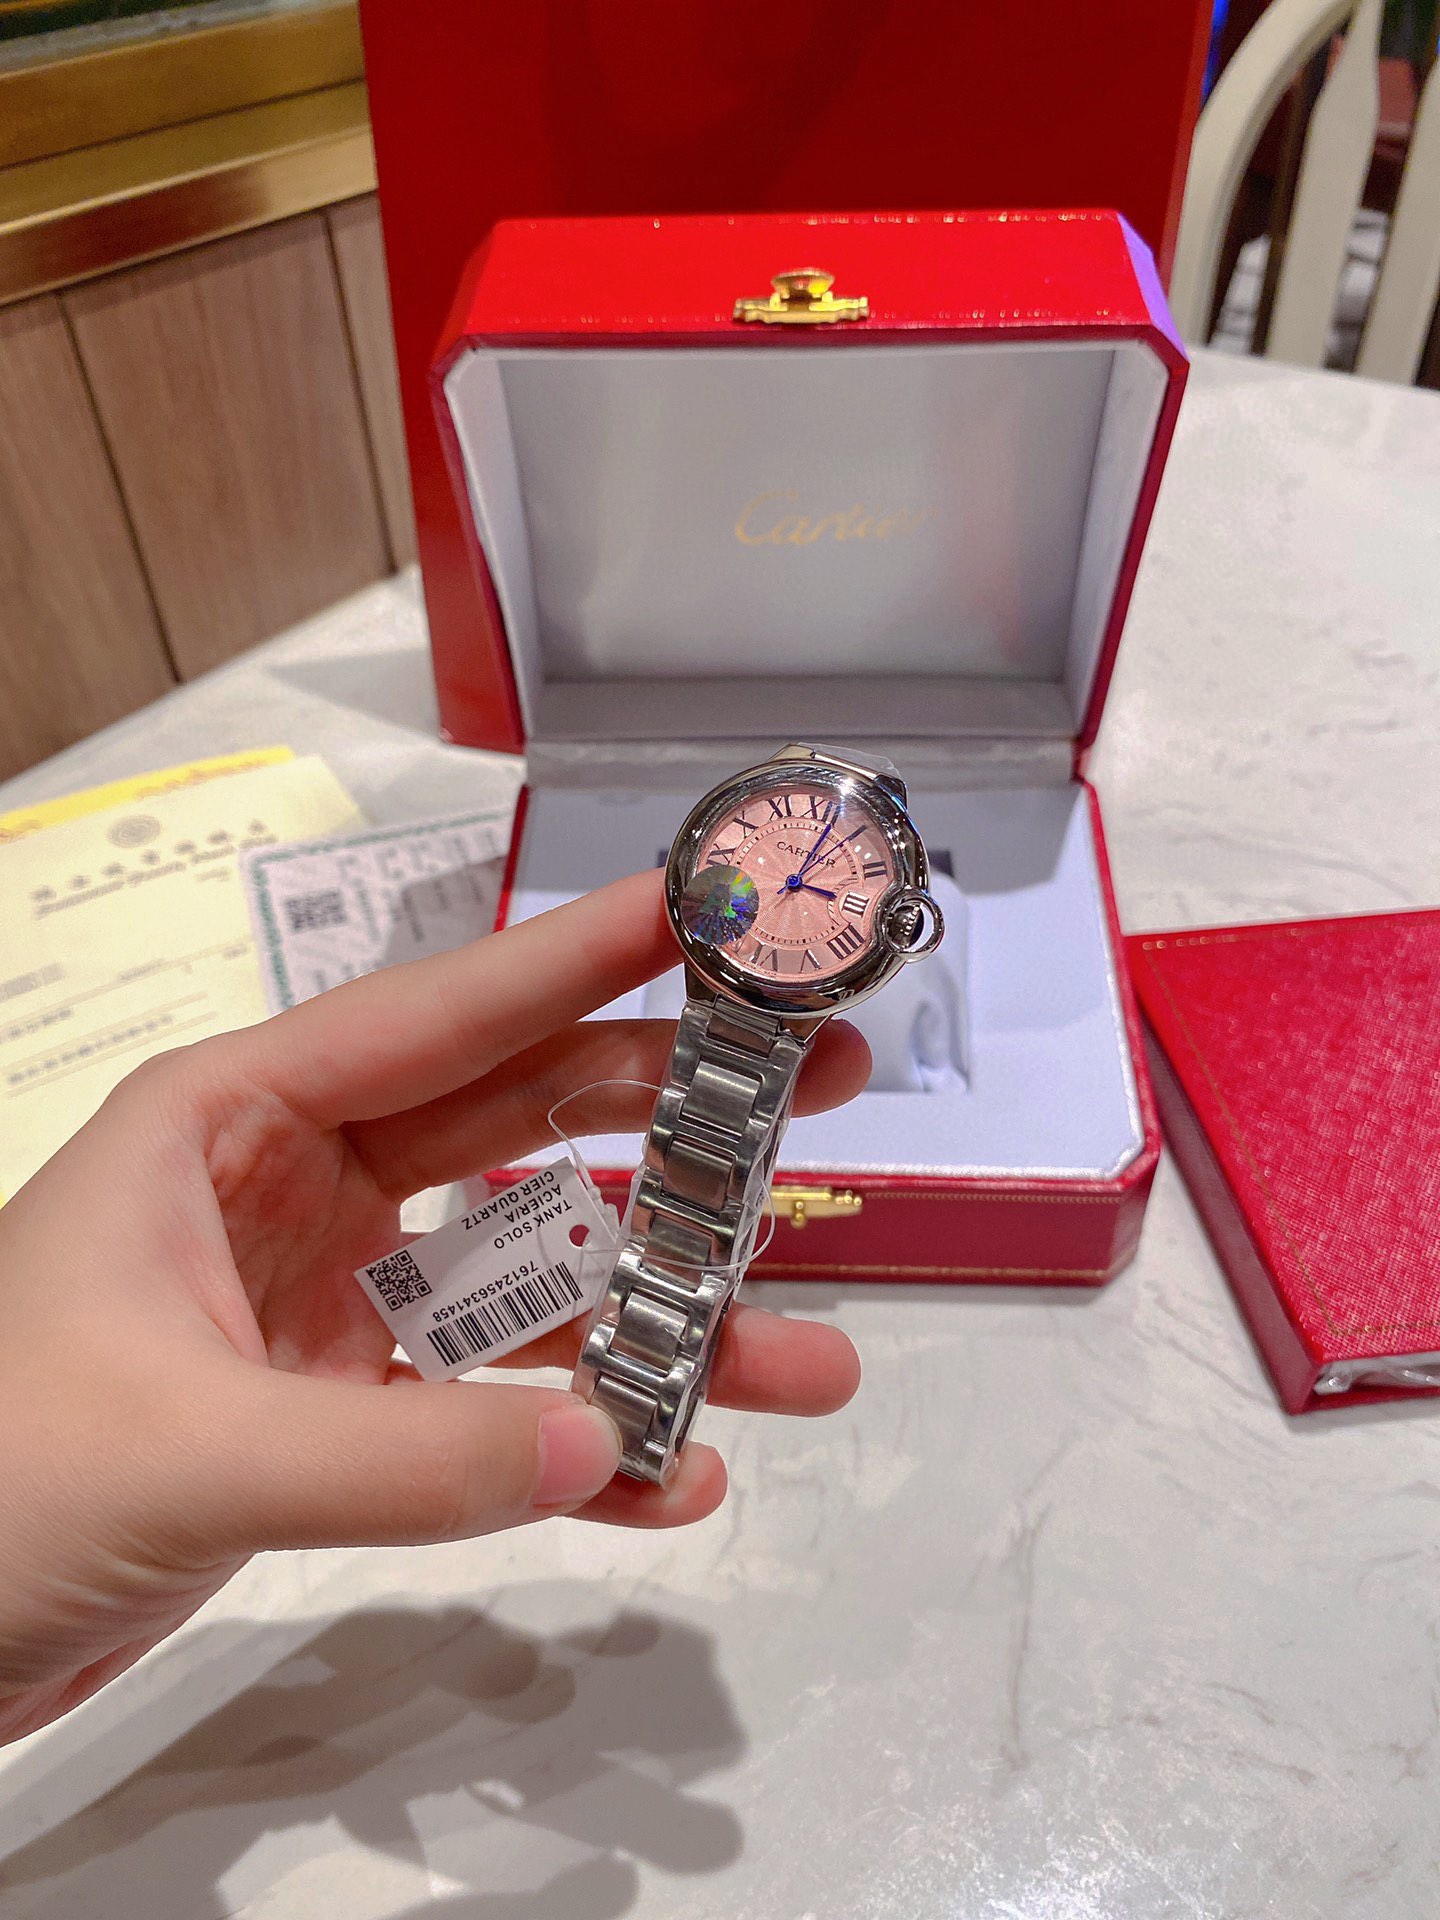 CARTIERカルティエみたいな時計偽物 フランス 薄い Cartier  腕時計 スチールバンド ピンク_4